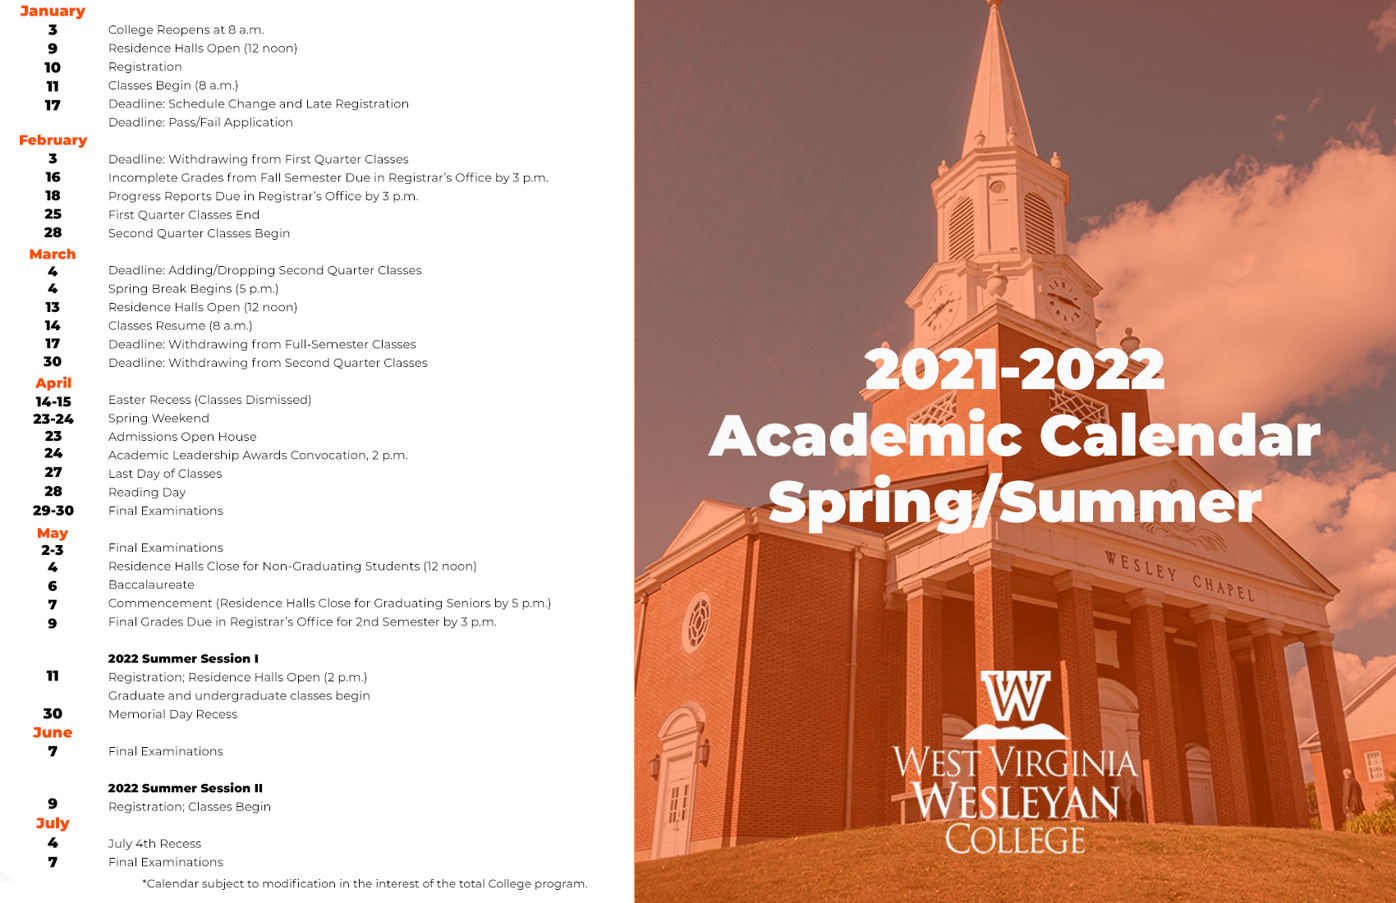 Wvu Academic Calendar 202223 August Calendar 2022